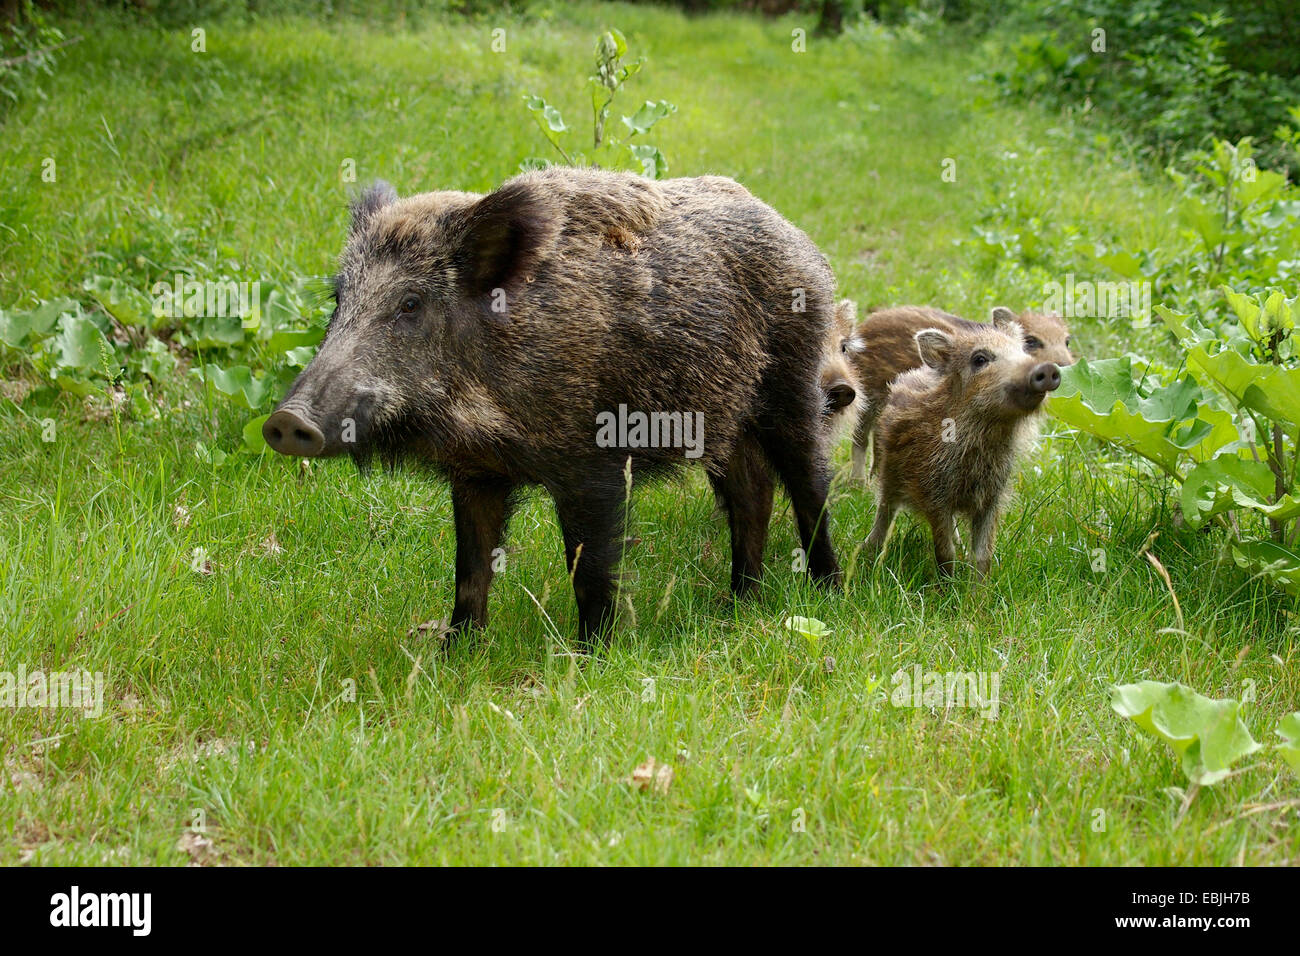 wild boar, pig, wild boar (Sus scrofa), female with shoats in a meadow, Germany, Baden-Wuerttemberg Stock Photo